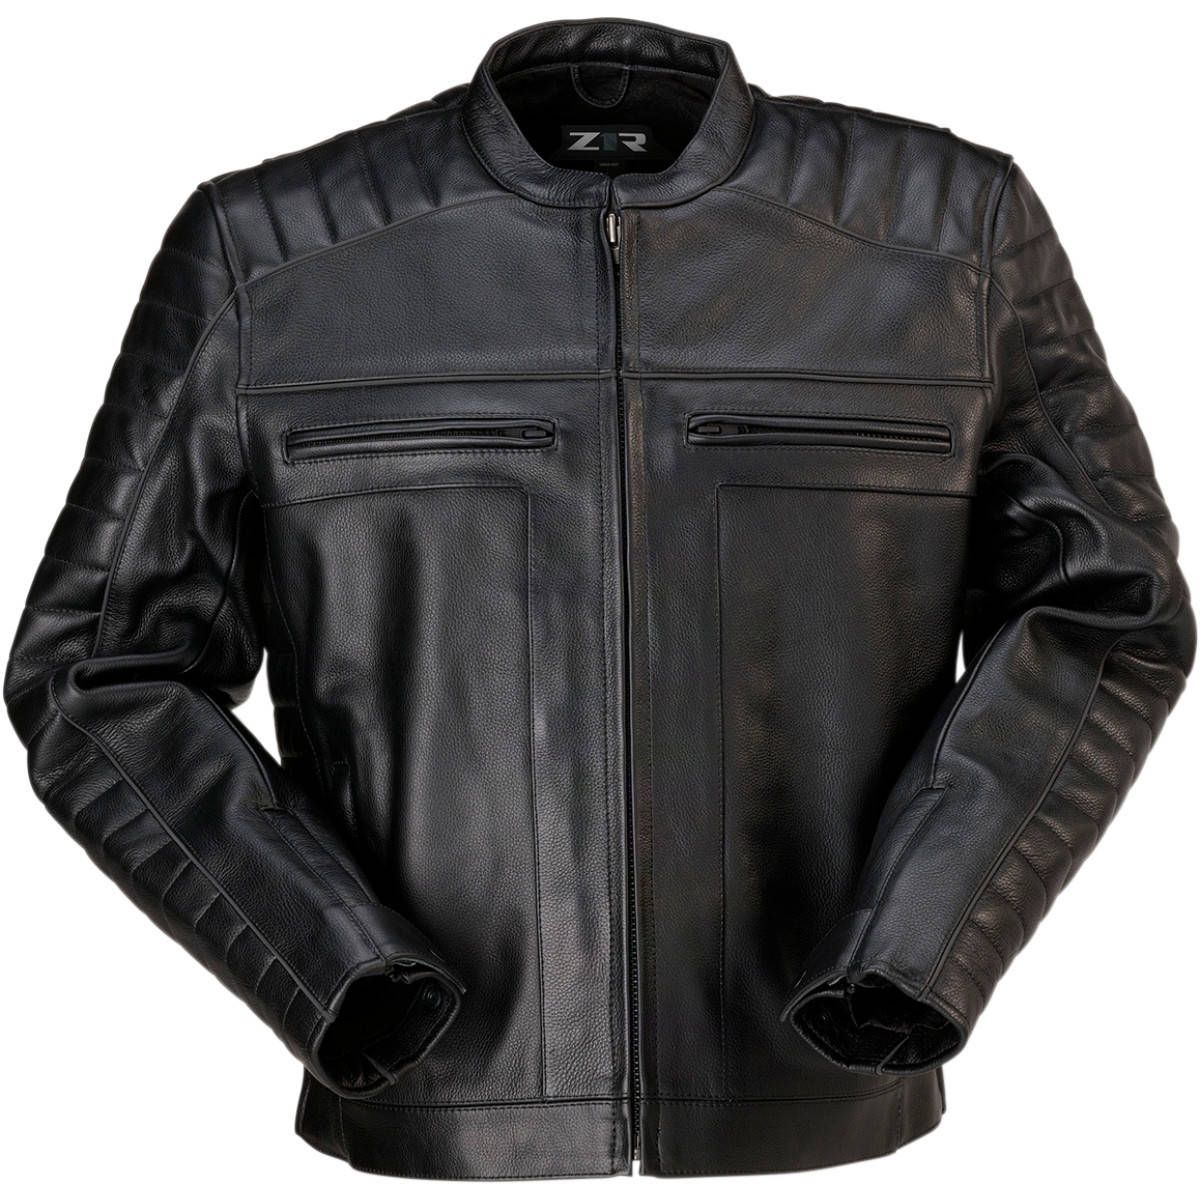 Z1R Artillery Leather Jacket